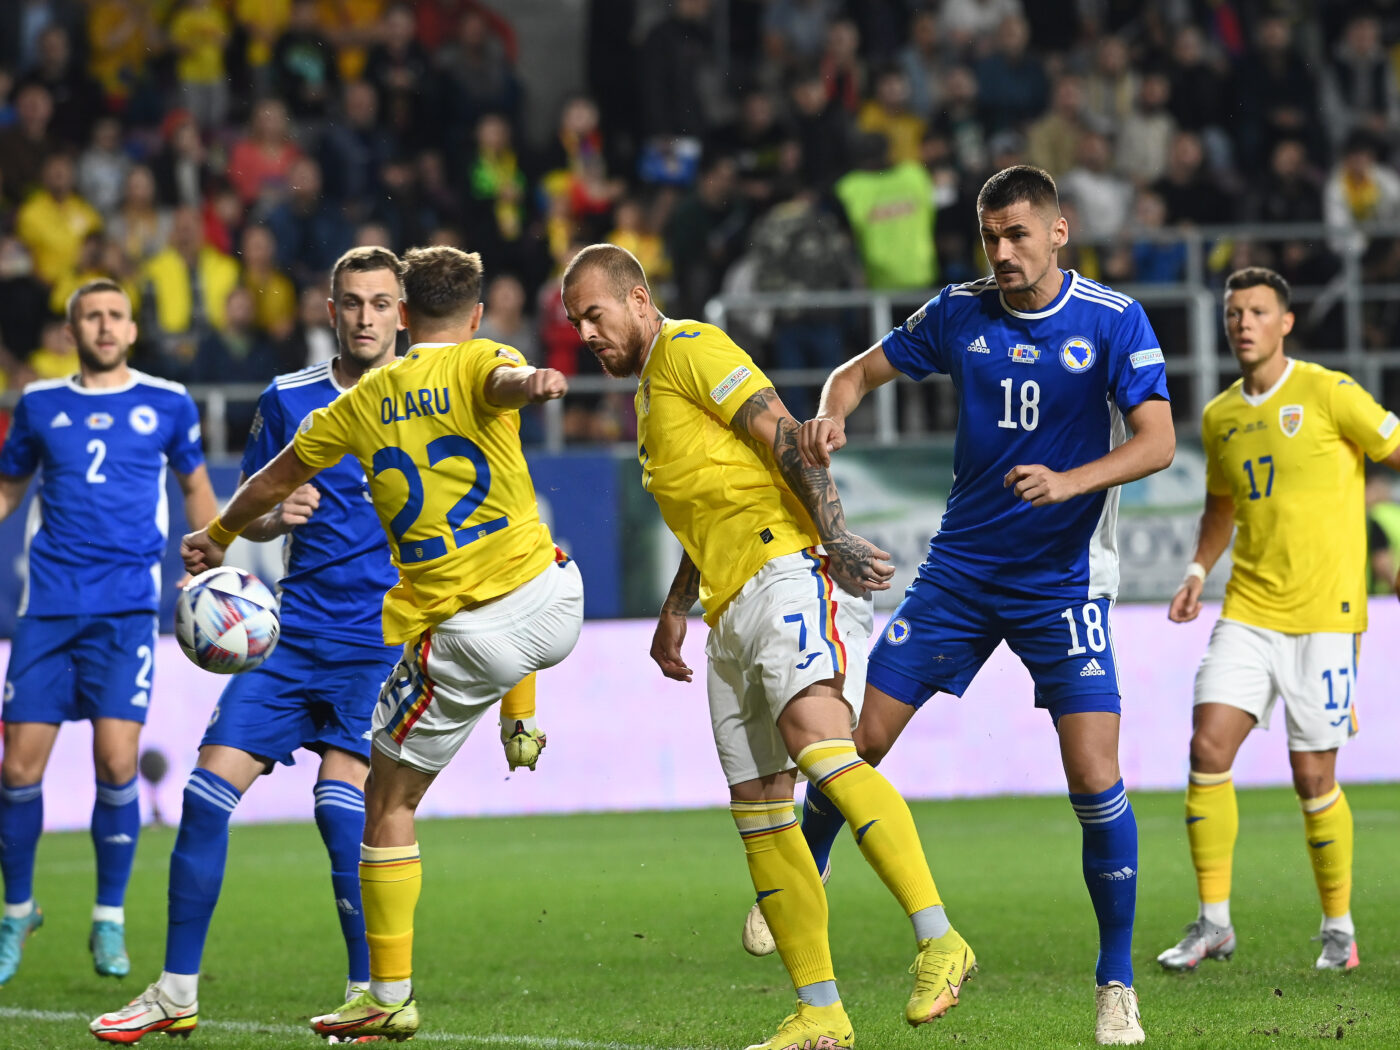 România – Bosnia și Herțegovina 1-0, Live Video Online, în etapa 6 din Liga Națiunilor. A început repriza secundă! Finlanda conduce în Muntenegru și ne trimite în Divizia C!